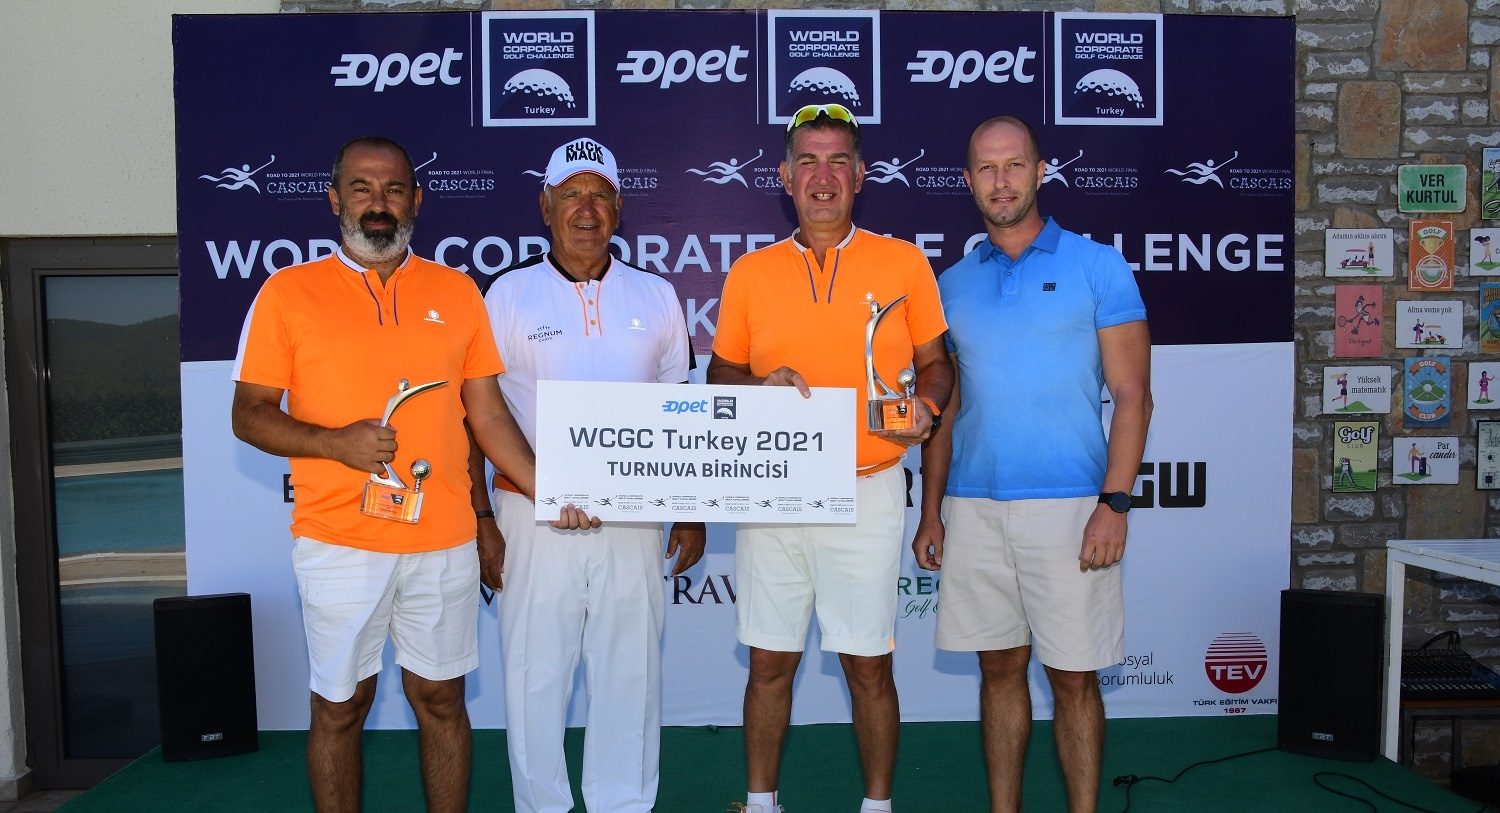 OPET Dünya Kurumsal Golf Turnuvası Türkiye şampiyonları belli oldu